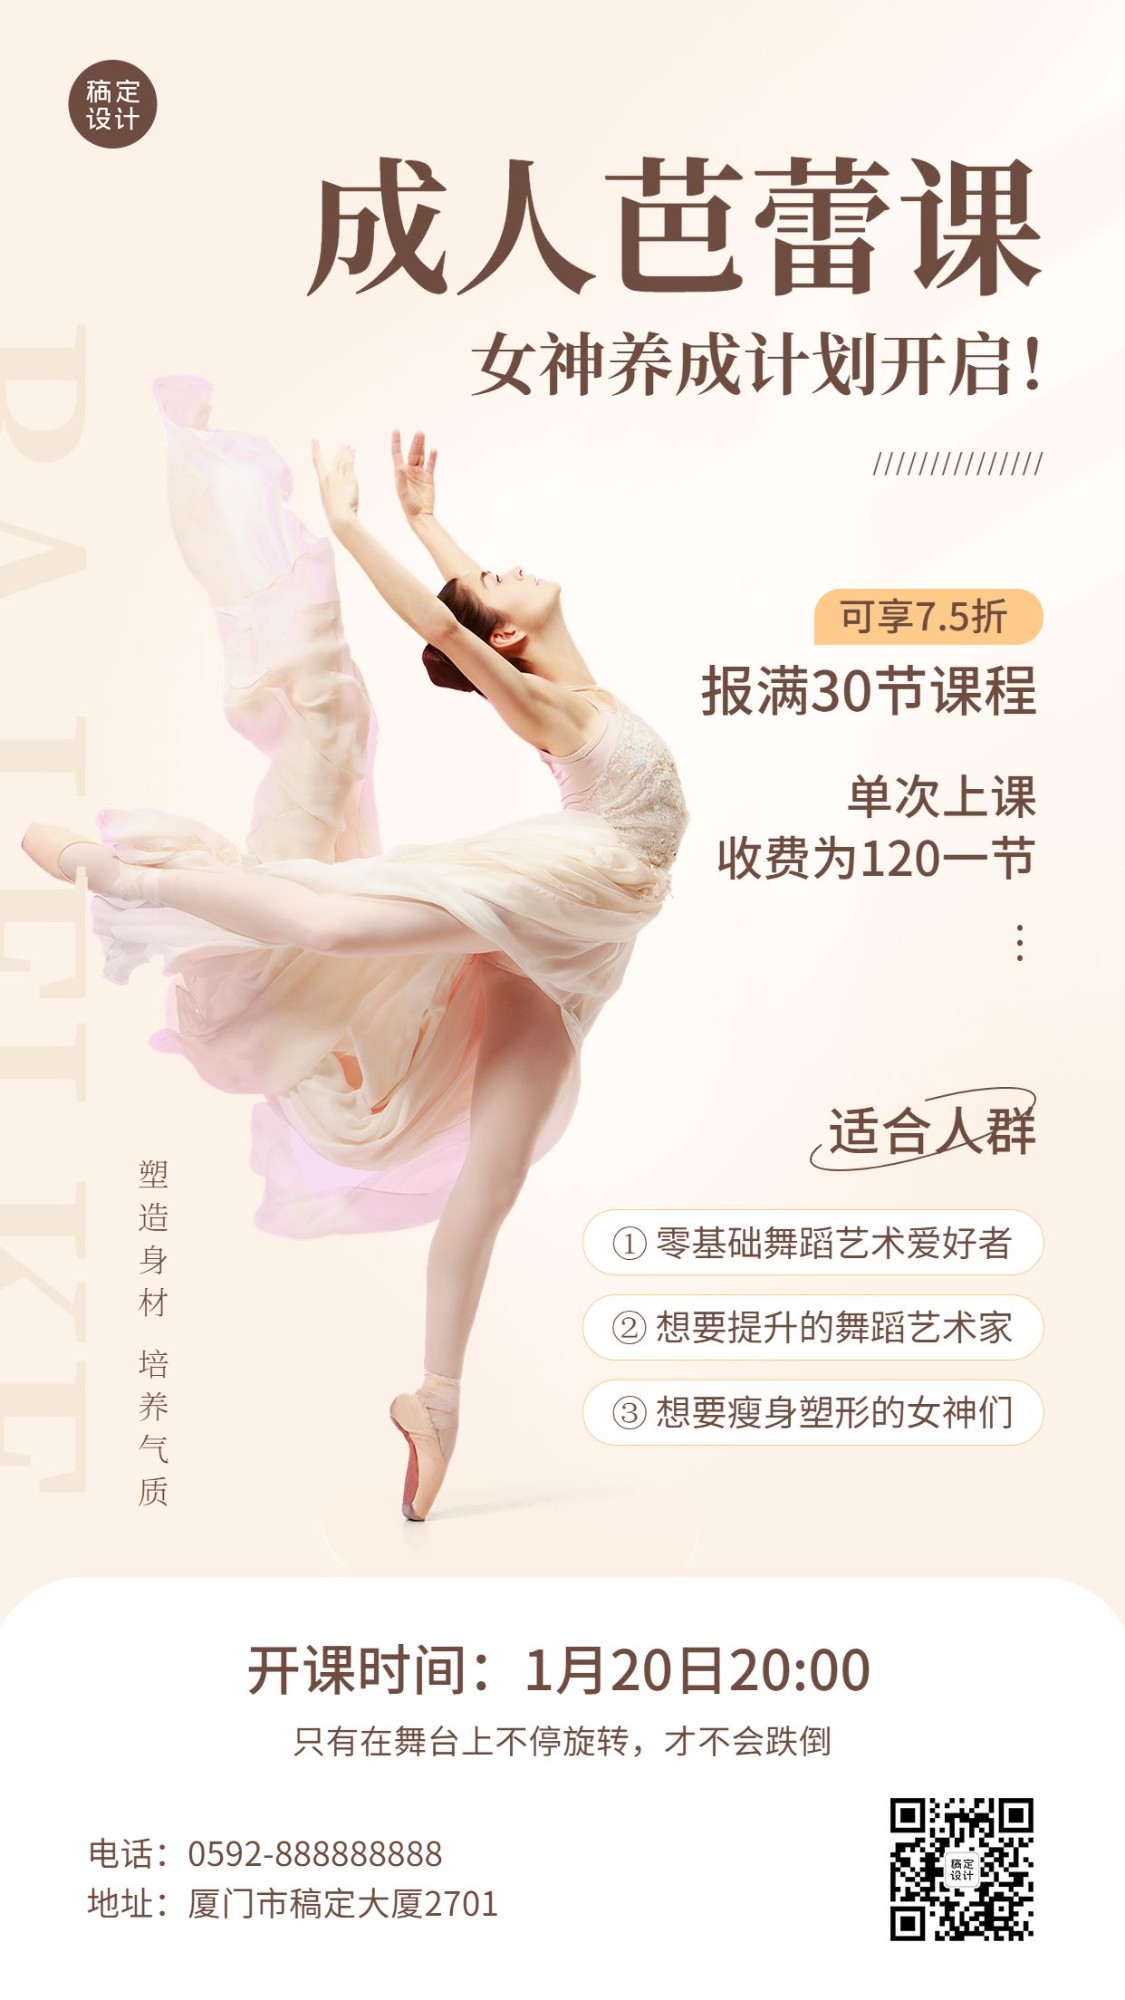 教育培训成人芭蕾课程招生宣传手机海报